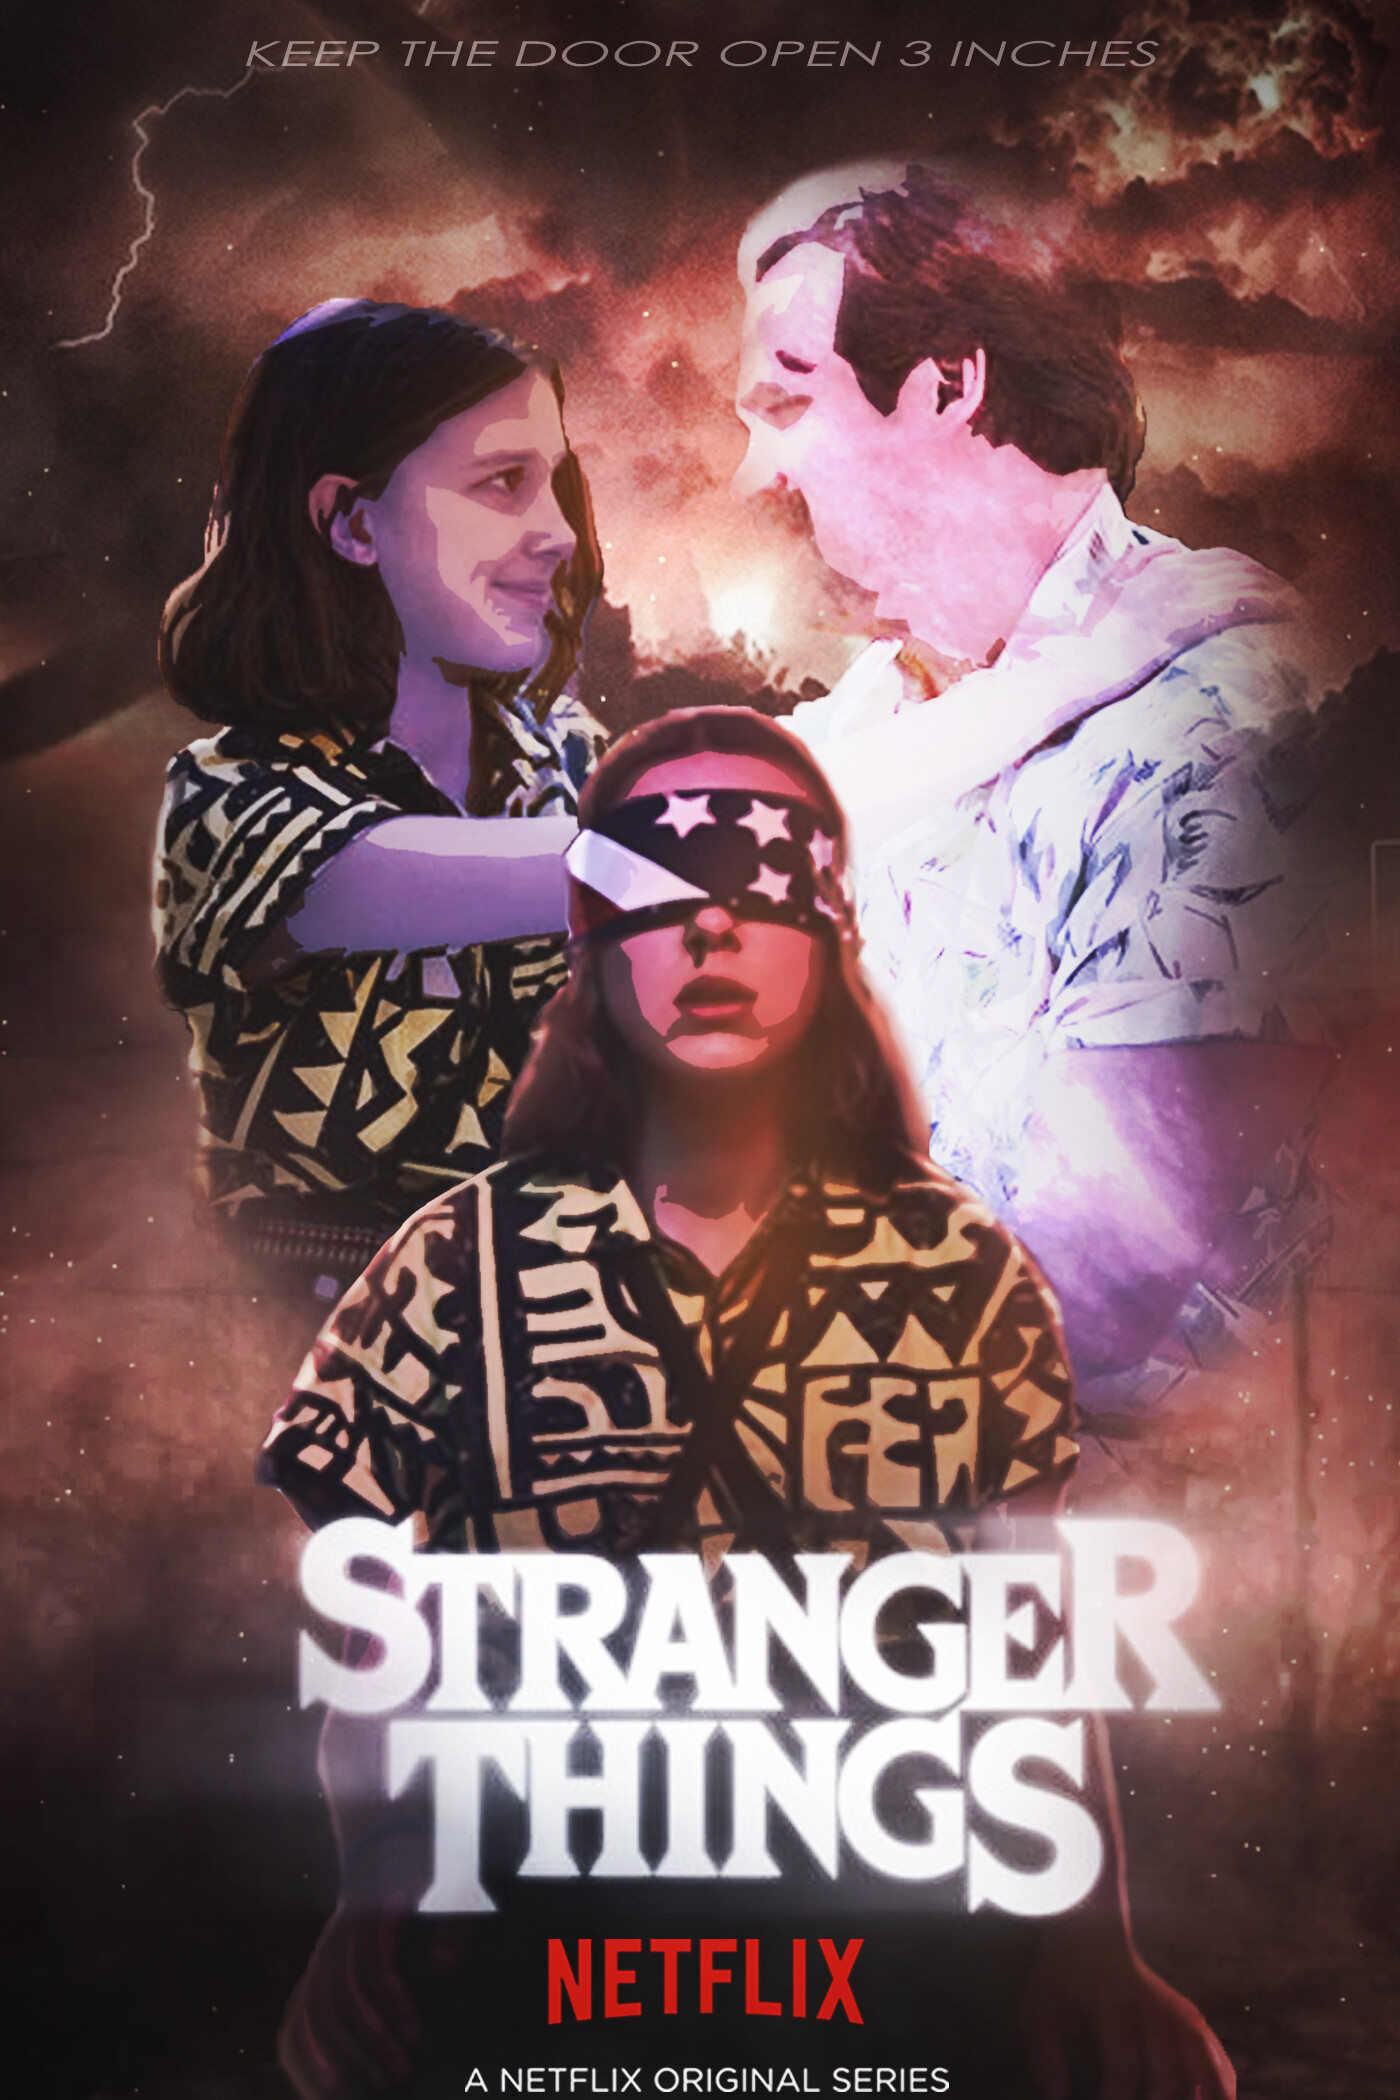 ArtStation - Stranger Things Movie Poster